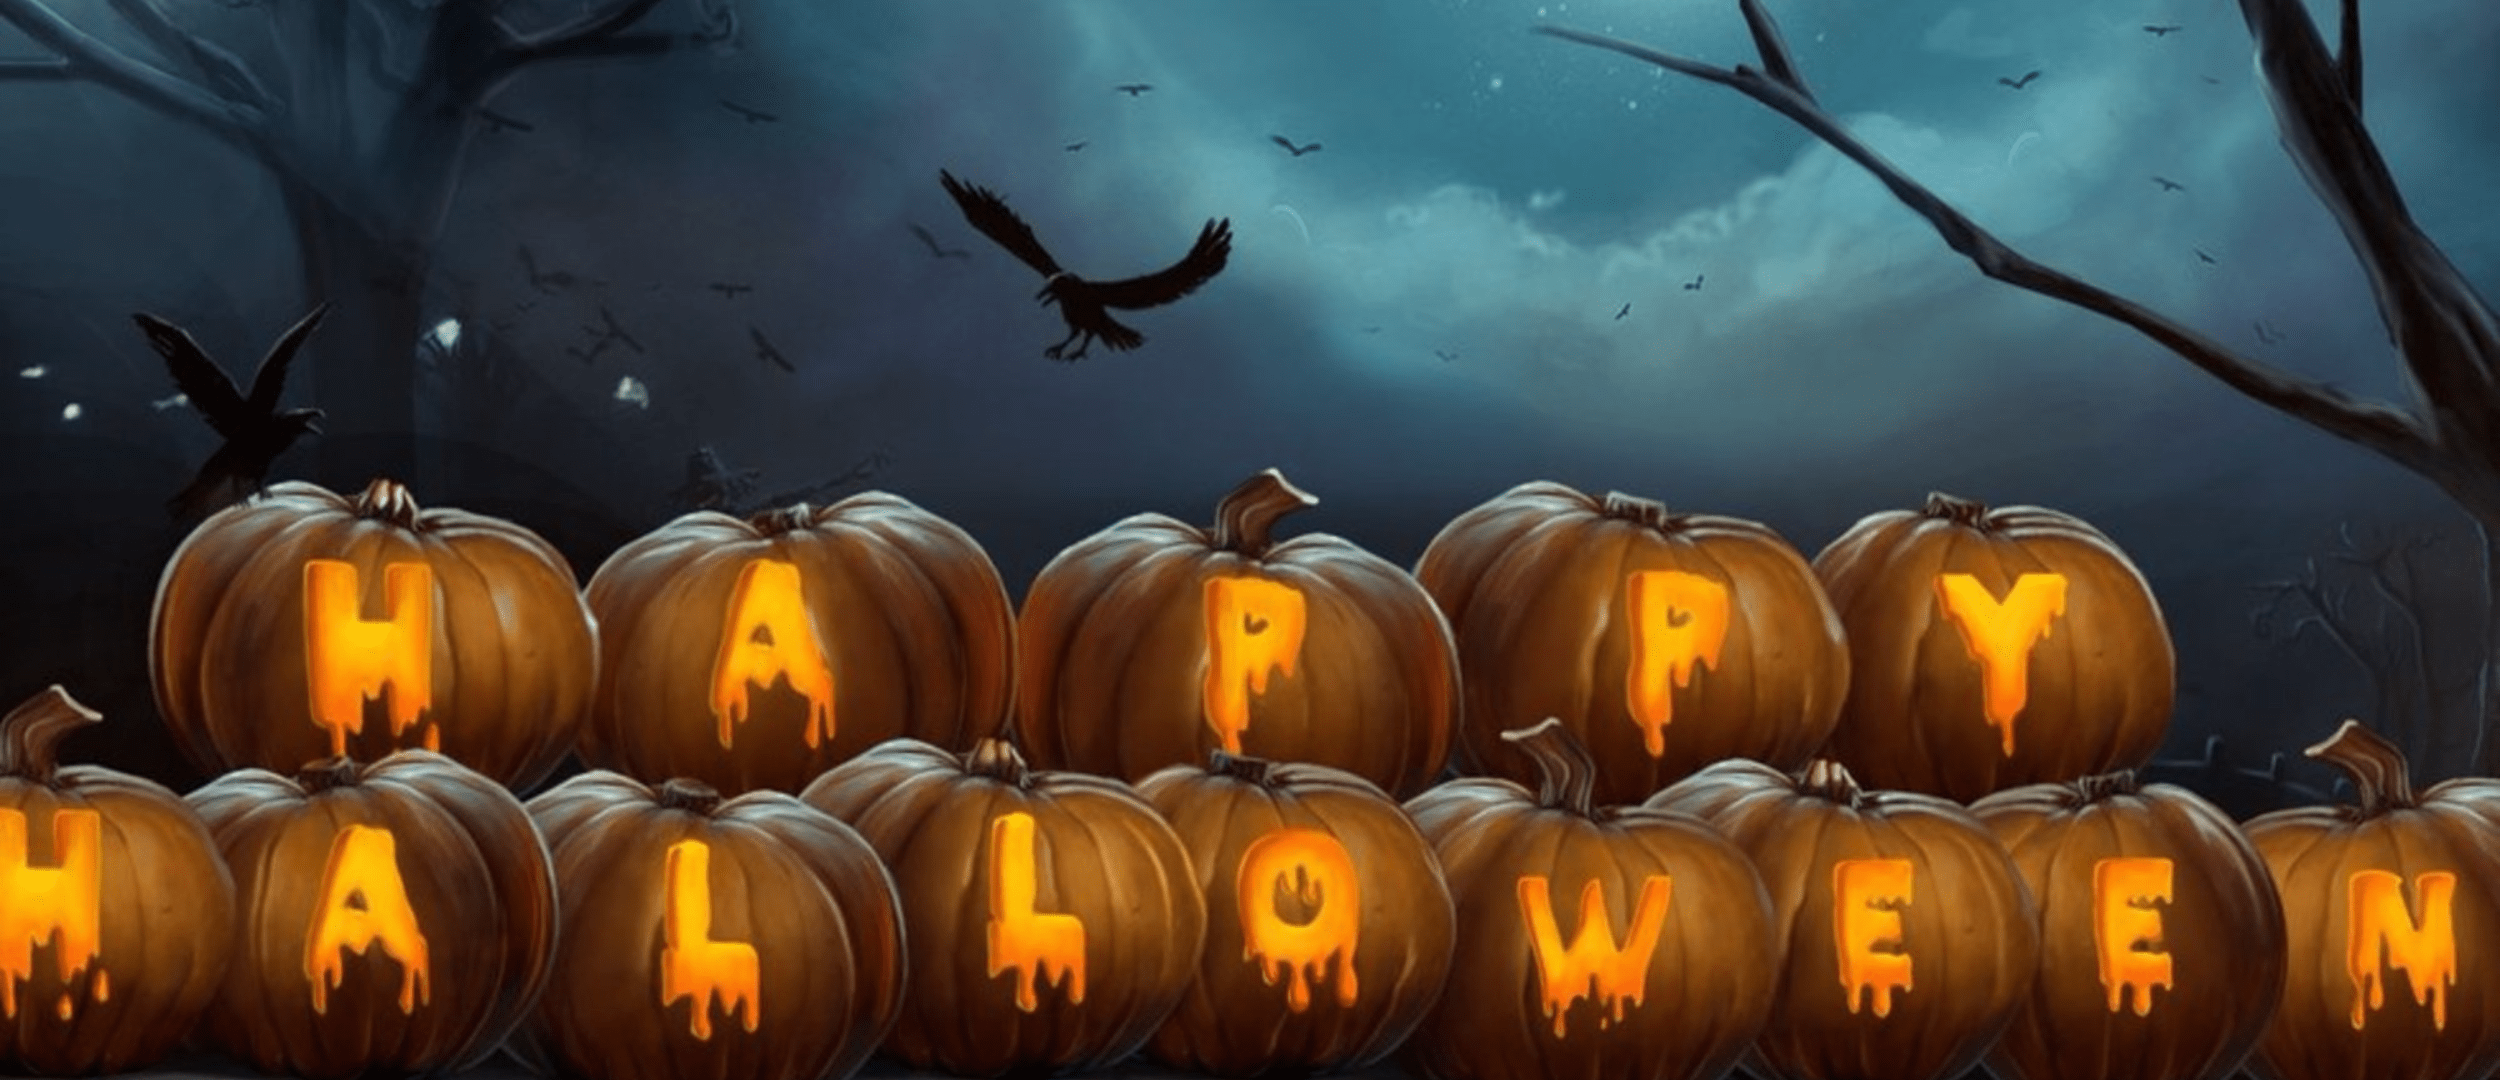 Happy Halloween Sign Design 